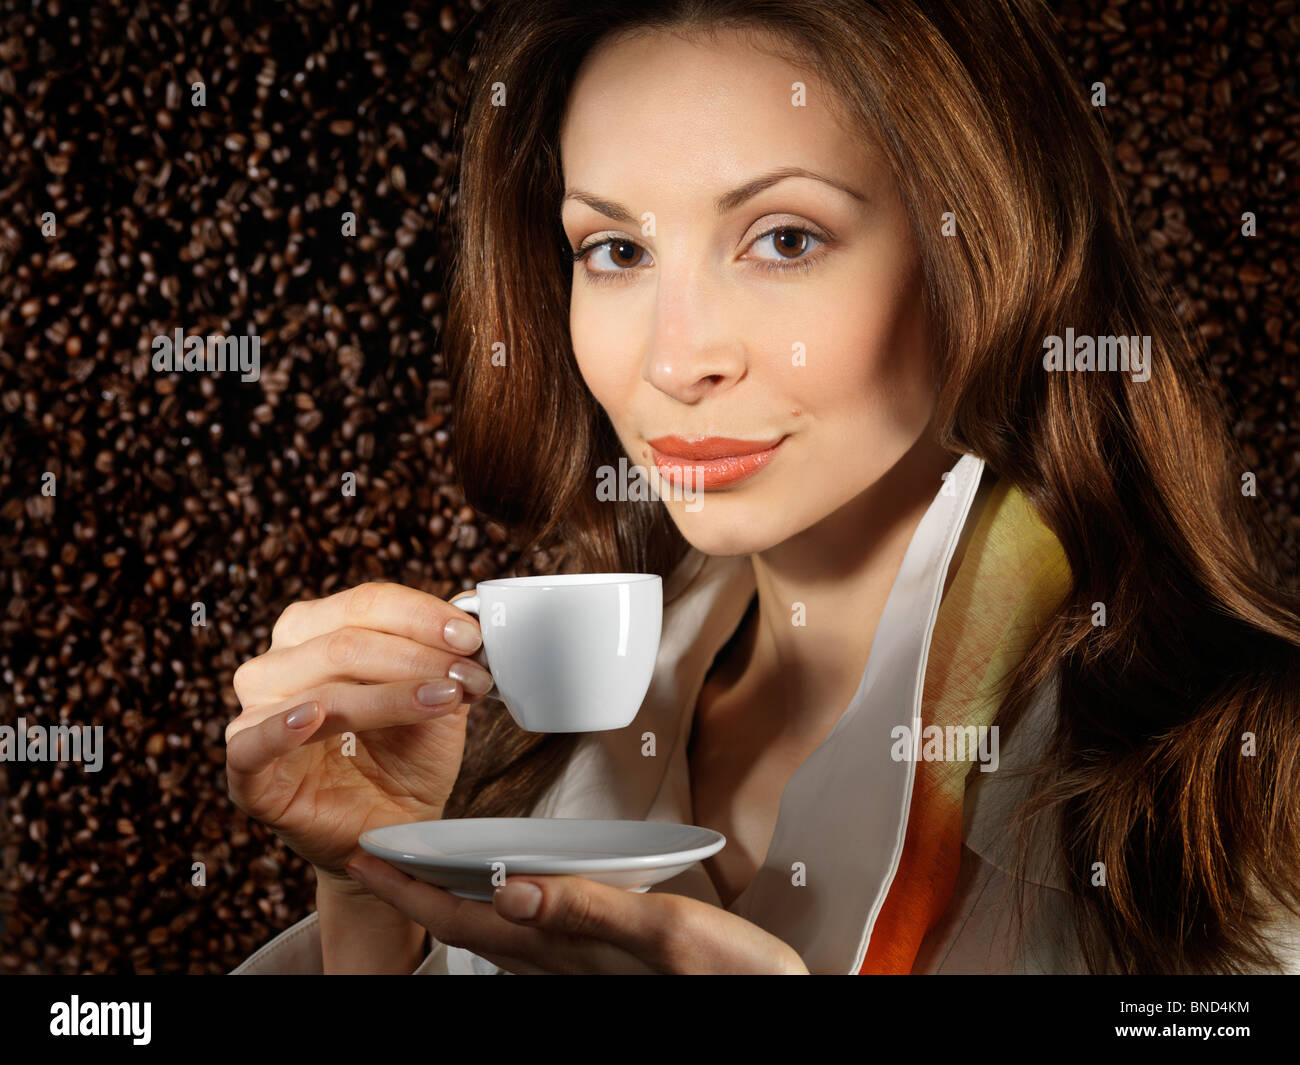 Schöne junge Frau hält eine Tasse Kaffee mit Kaffeebohnen Hintergrund hinter ihr Stockfoto